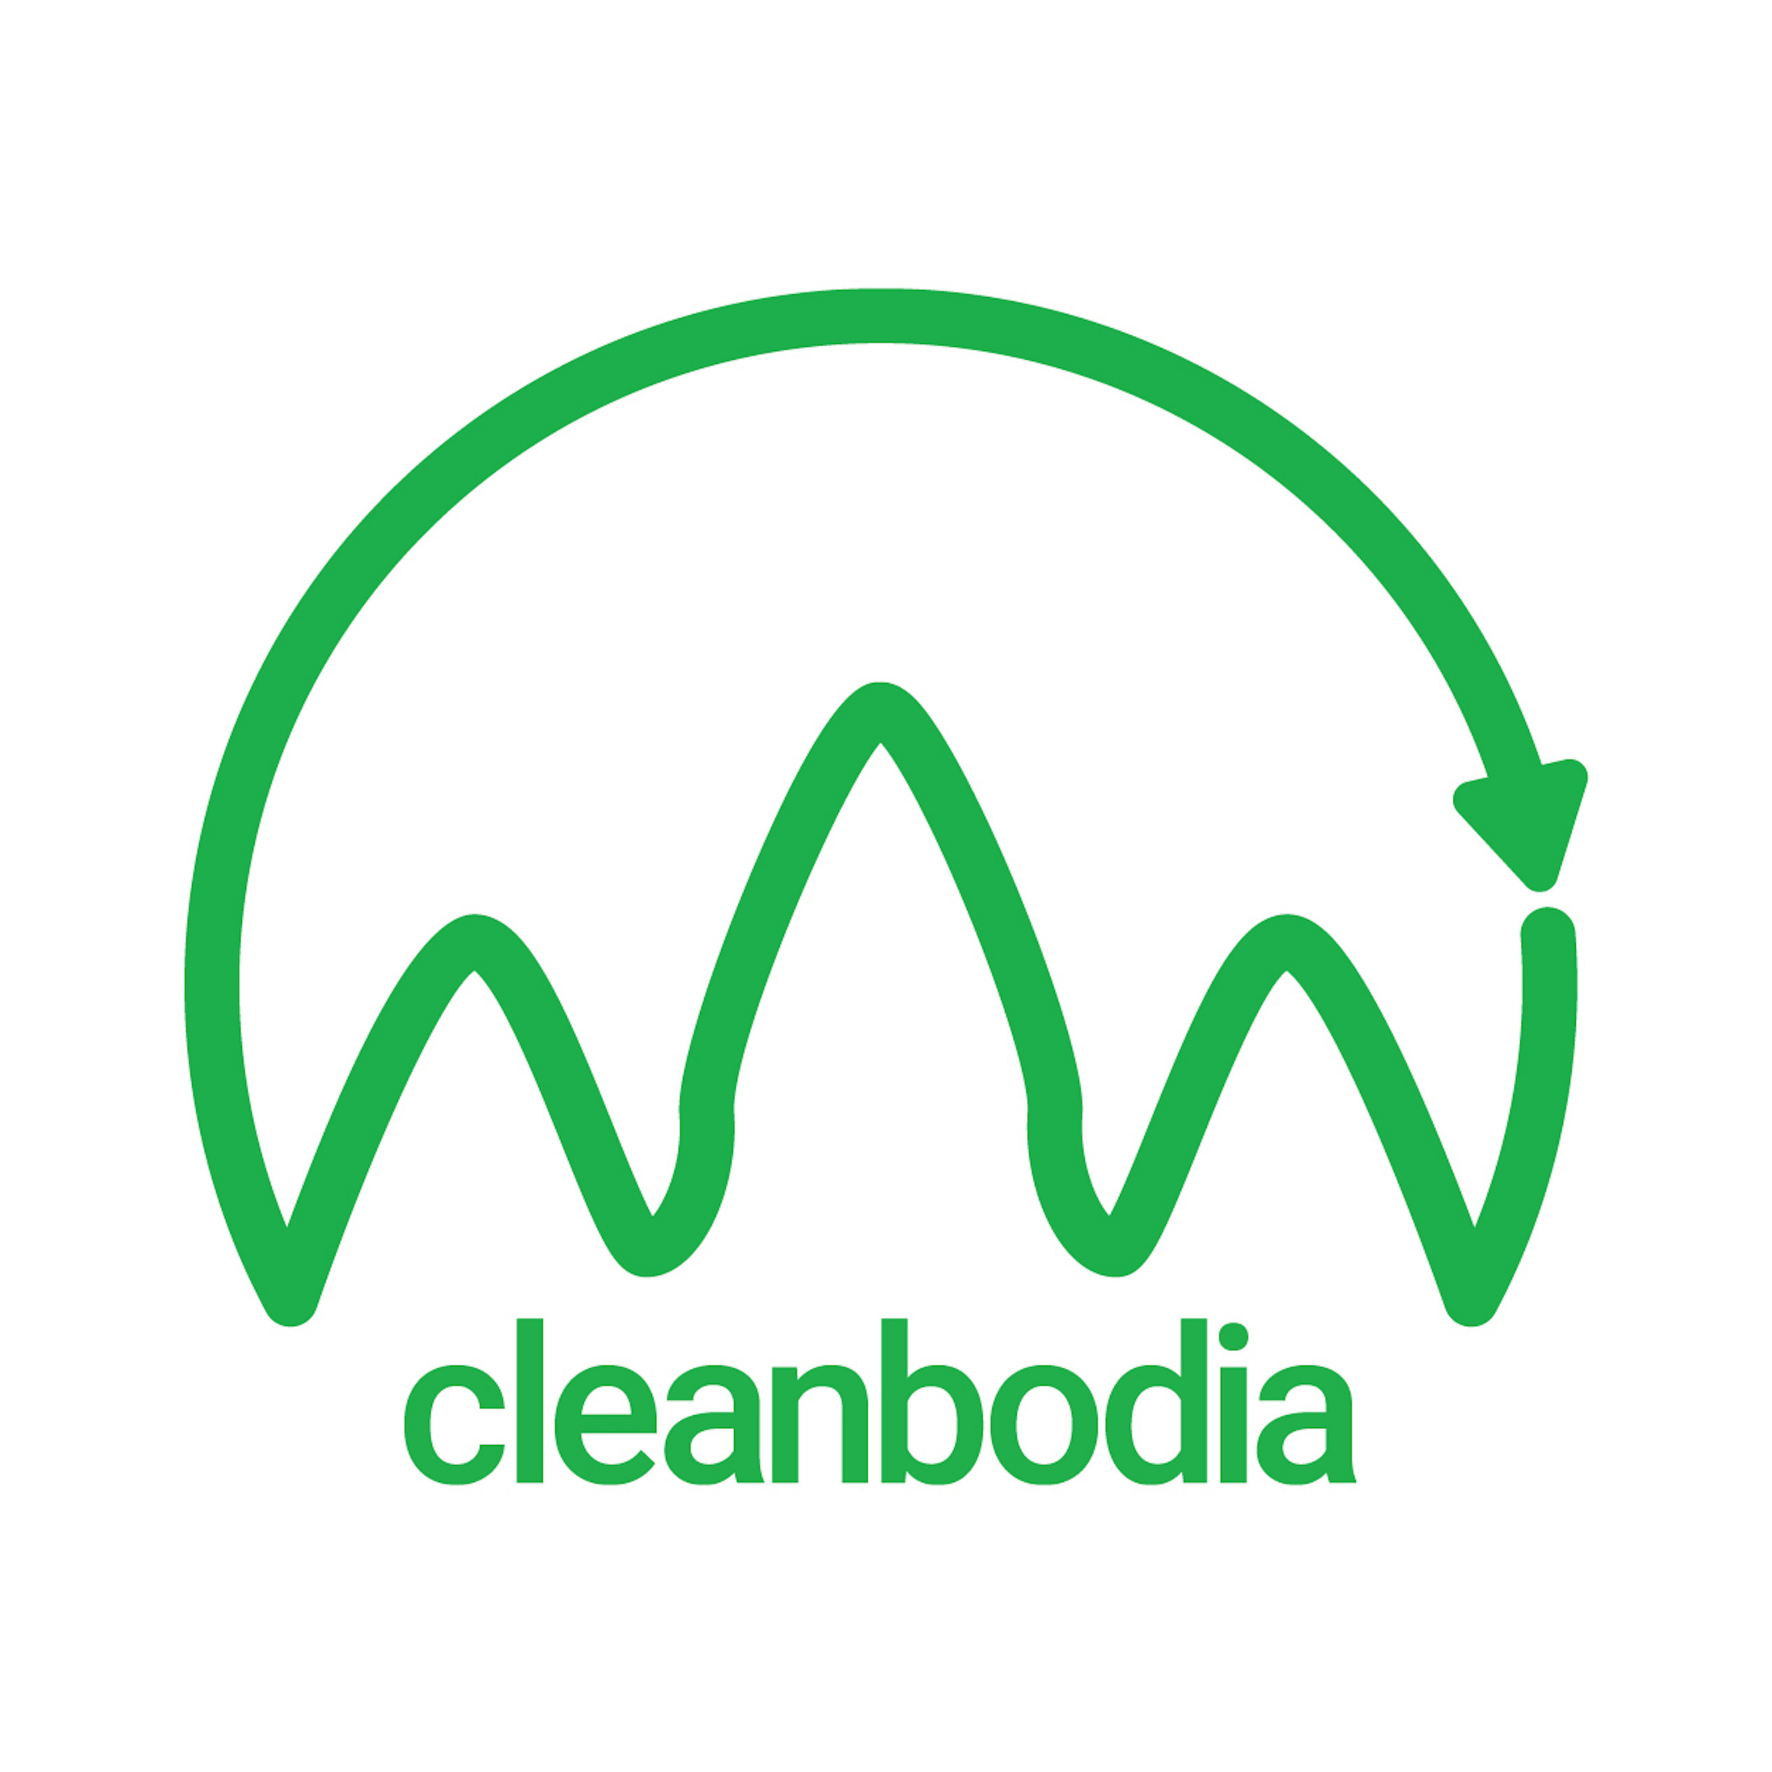 Cleanbodia logo (15 x 15 cm)